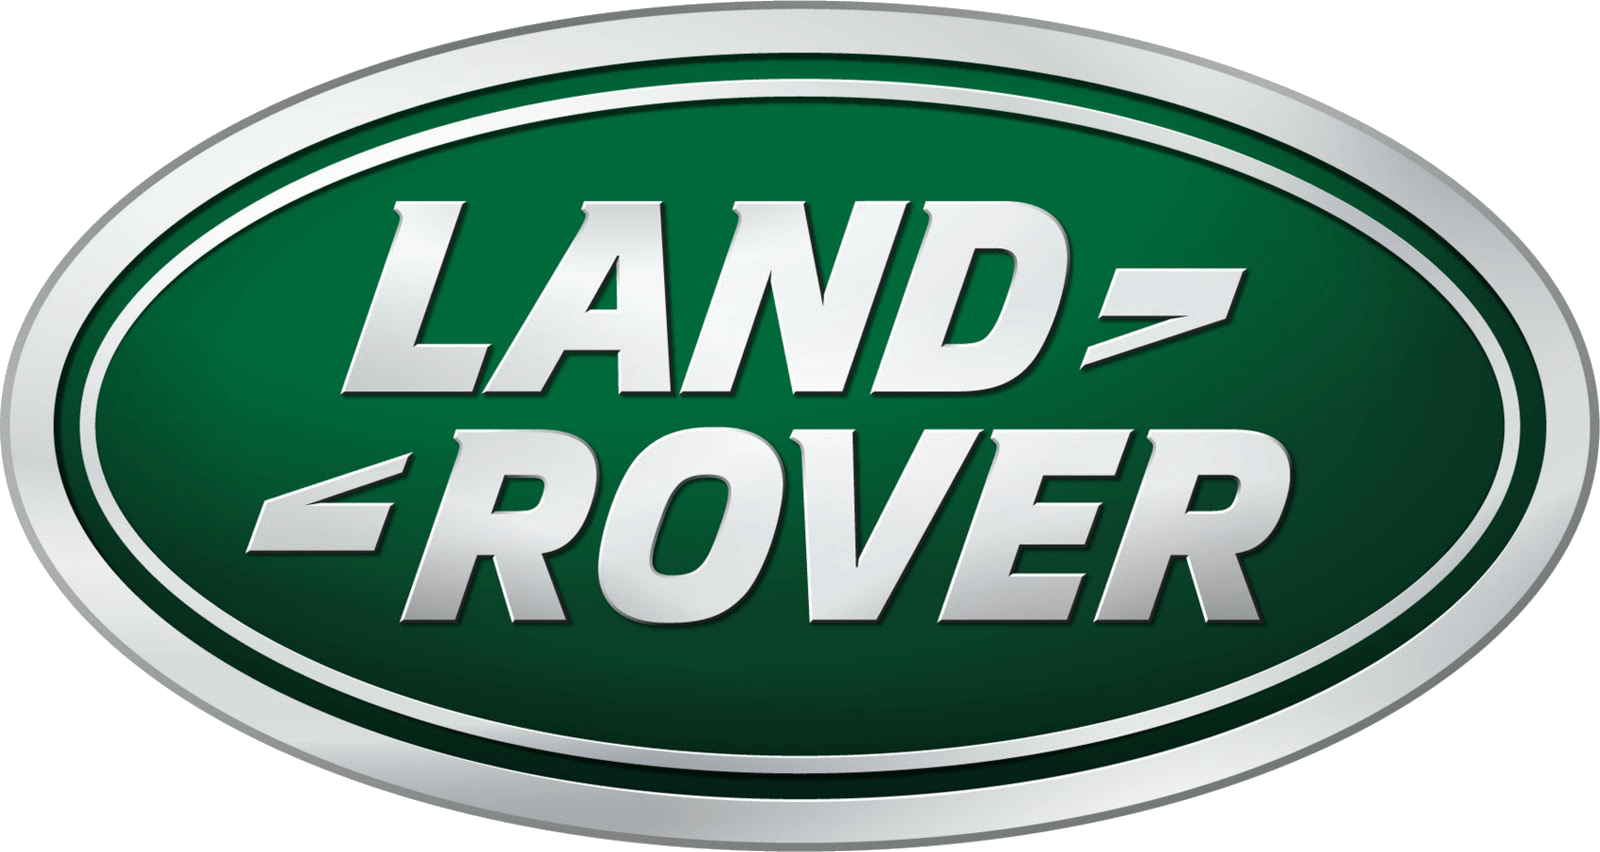 Green Circle Car Logo - Land Rover Logo, Land Rover Car Symbol Meaning and History | Car ...